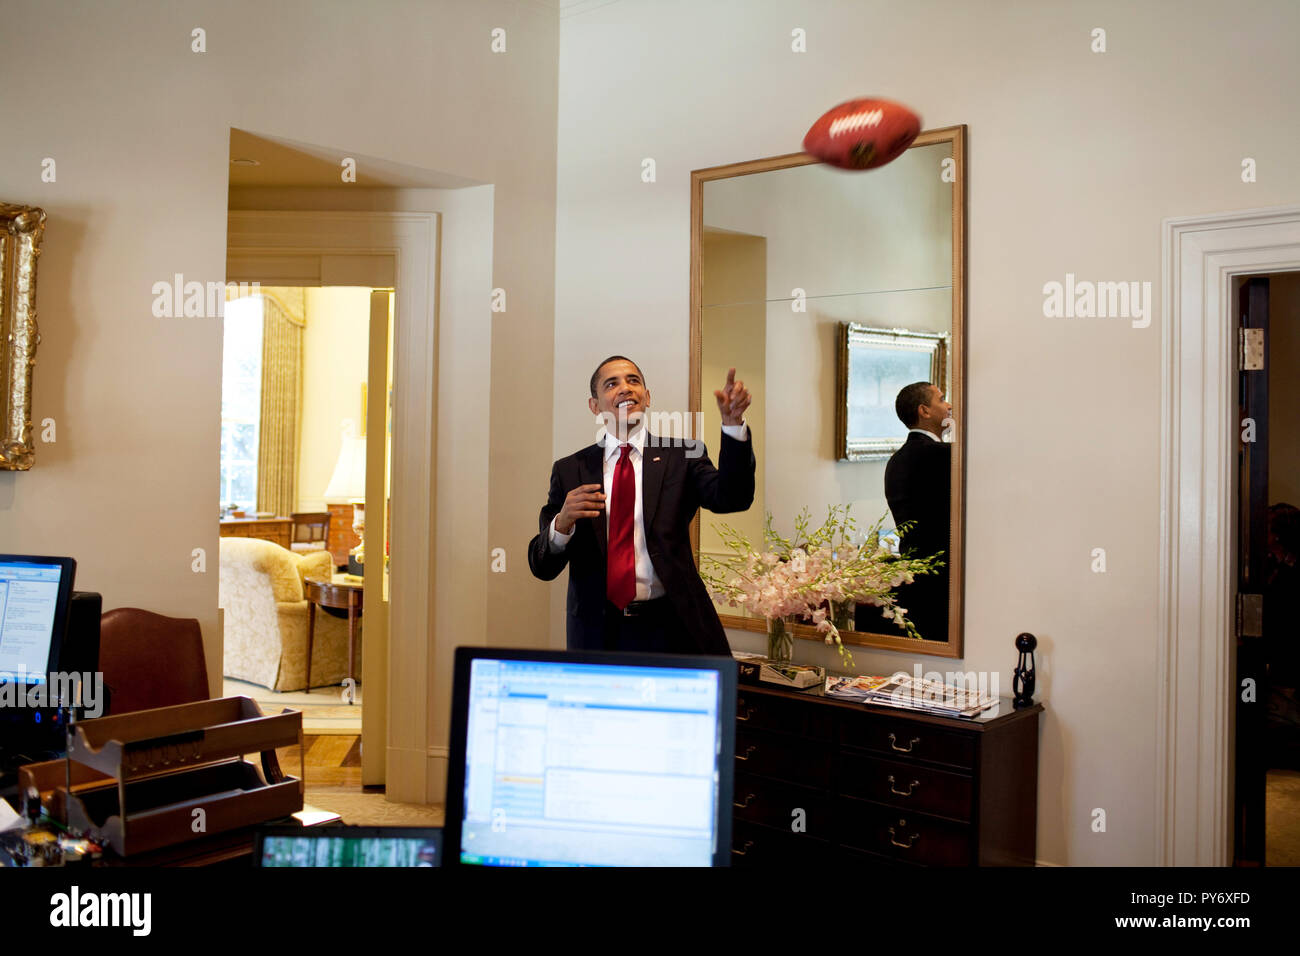 Le président Barack Obama joue avec un ballon de football dans l'Oval Office 3/4/09. Photo Officiel de la Maison Blanche par Pete Souza Banque D'Images